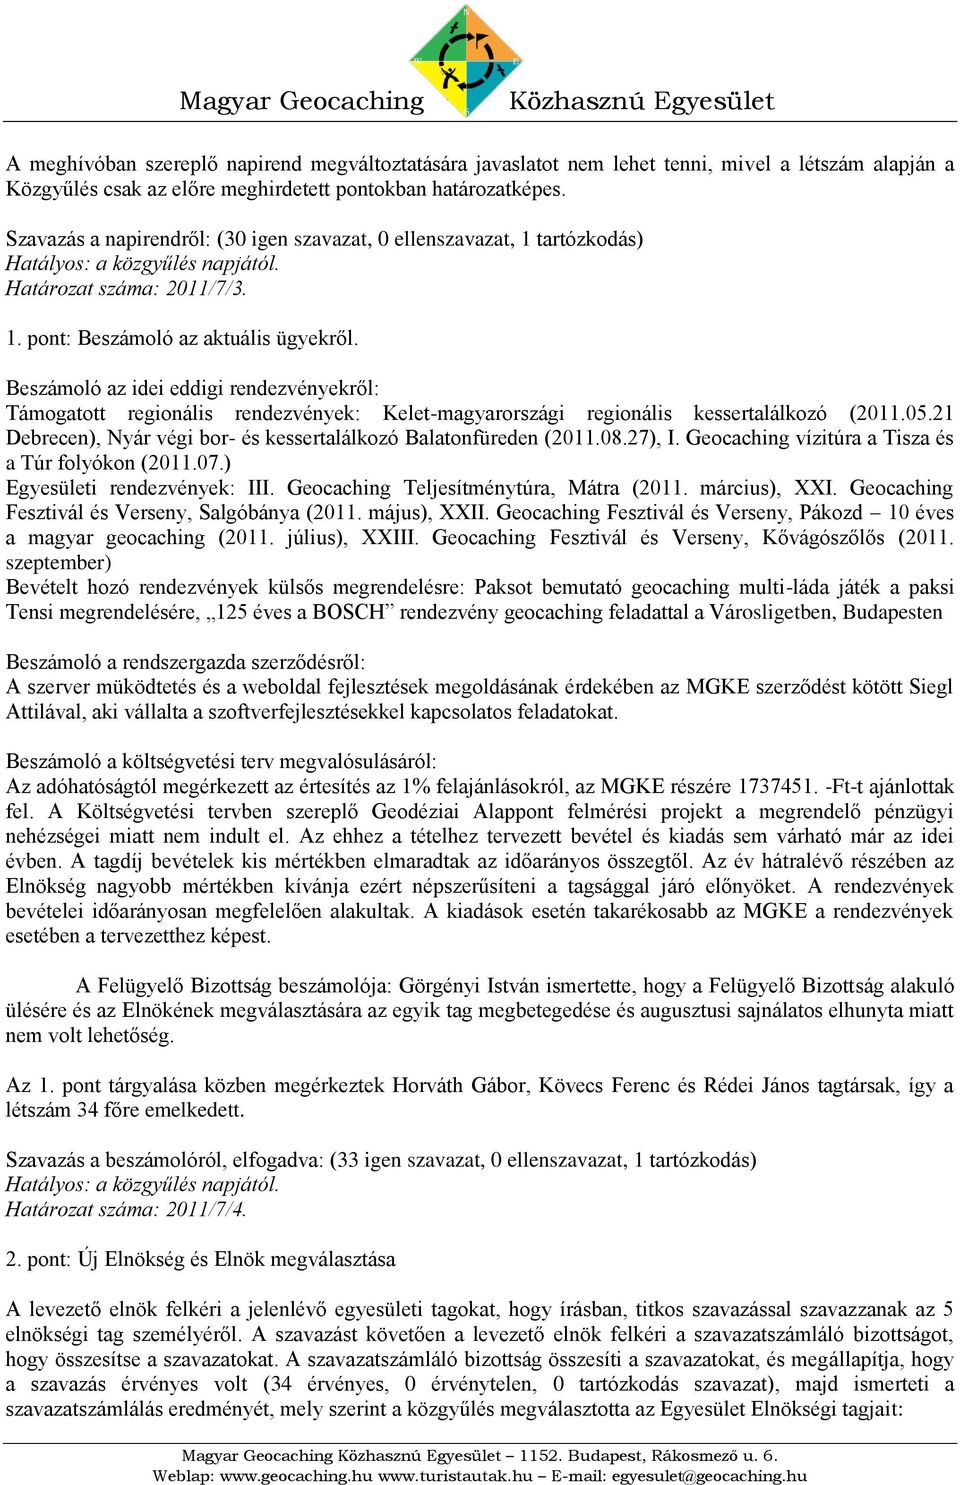 Beszámoló az idei eddigi rendezvényekről: Támogatott regionális rendezvények: Kelet-magyarországi regionális kessertalálkozó (2011.05.